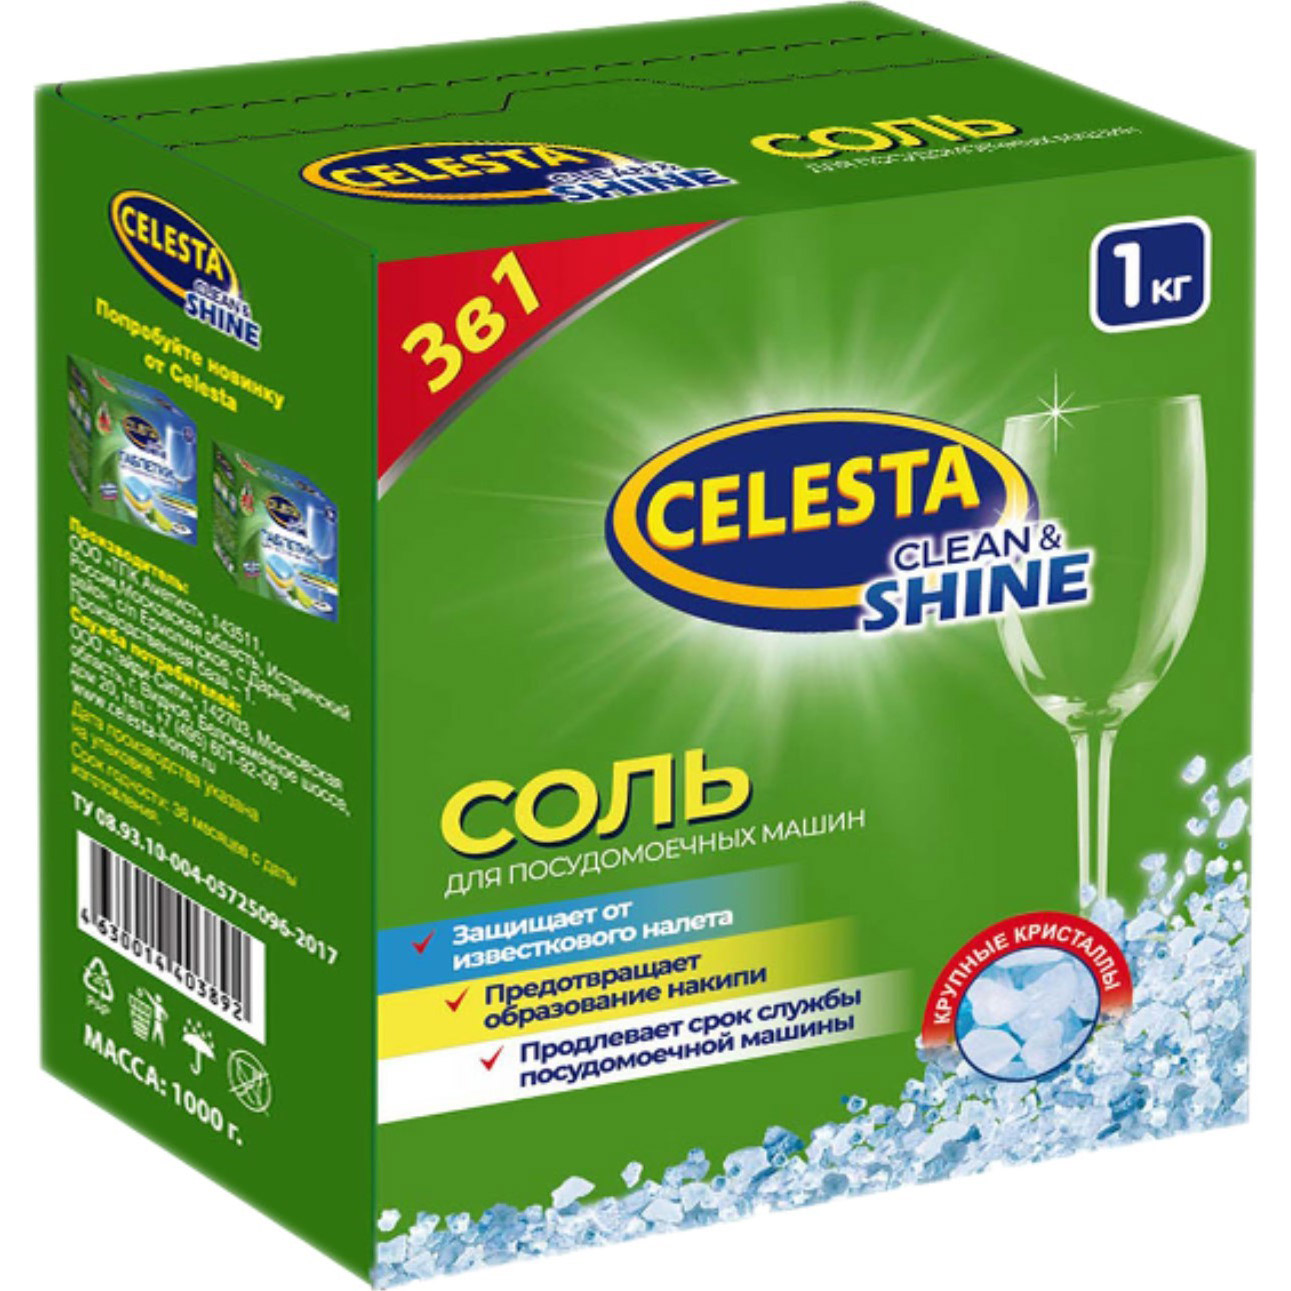 фото Соль для посудомоечной машины celesta clean & shine 1 кг